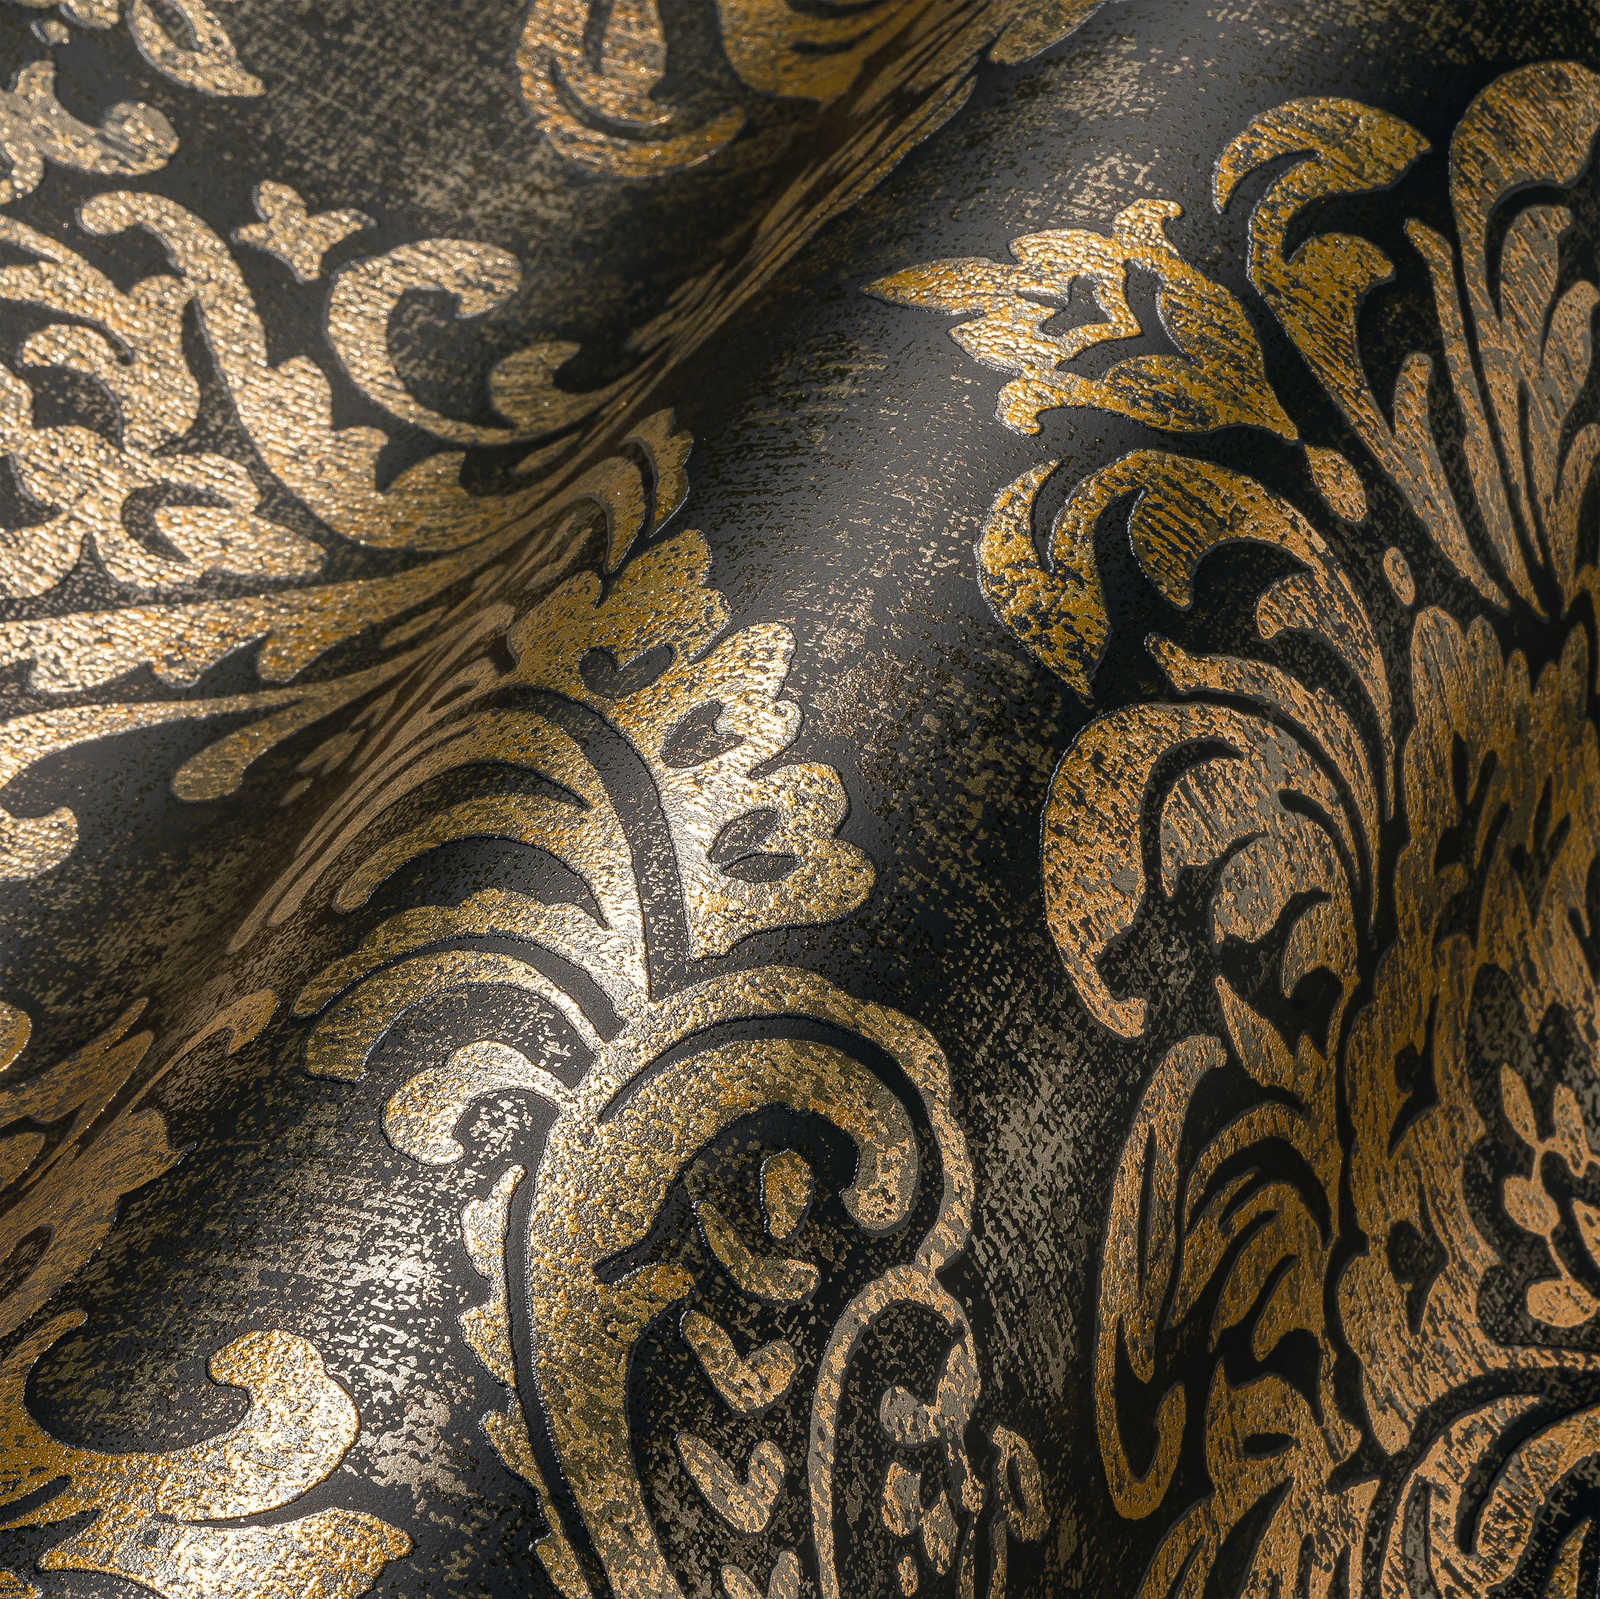             Papel pintado no tejido con ornamentos barrocos y aspecto metálico usado - negro, dorado
        